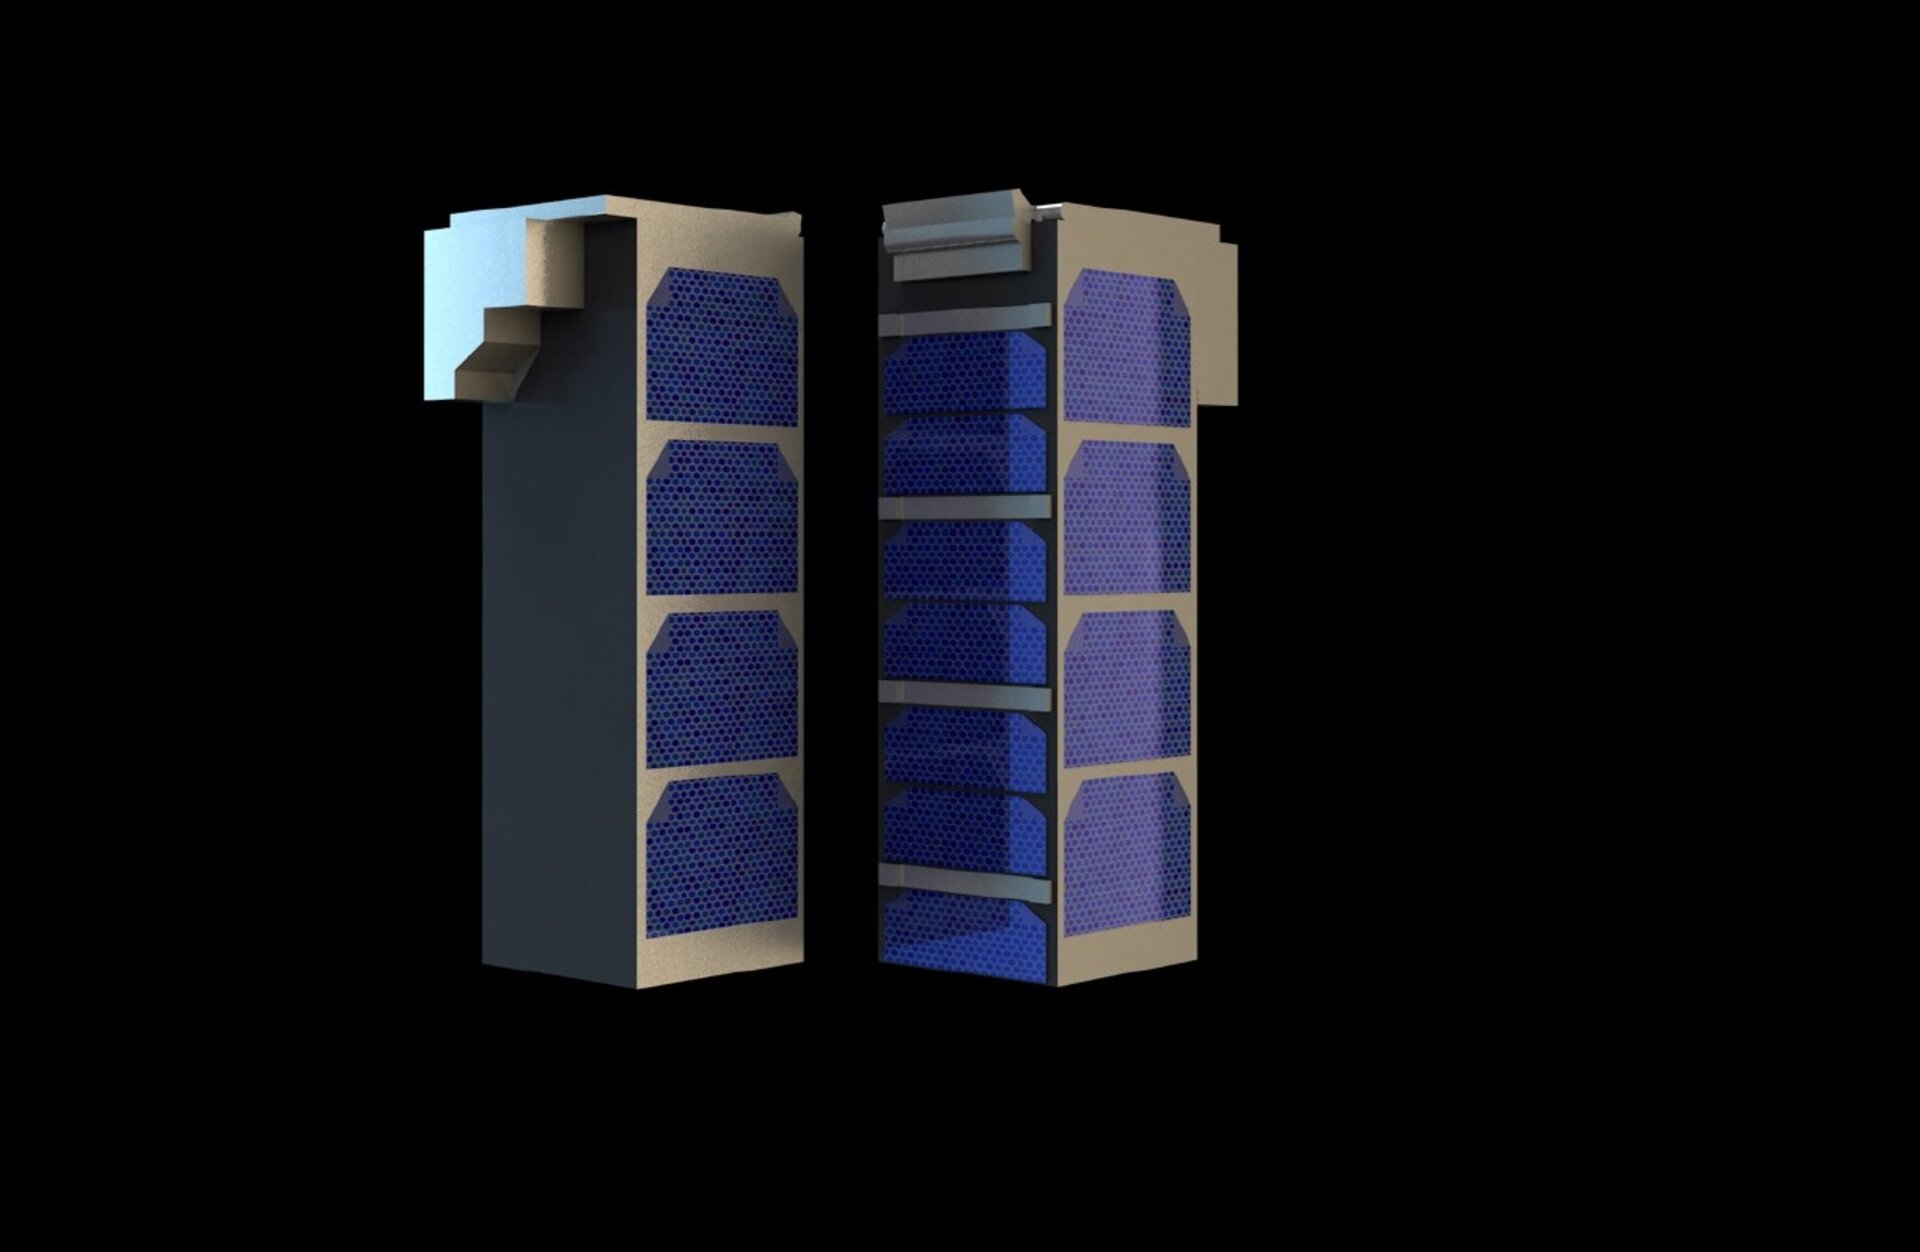 Triple-unit CubeSats